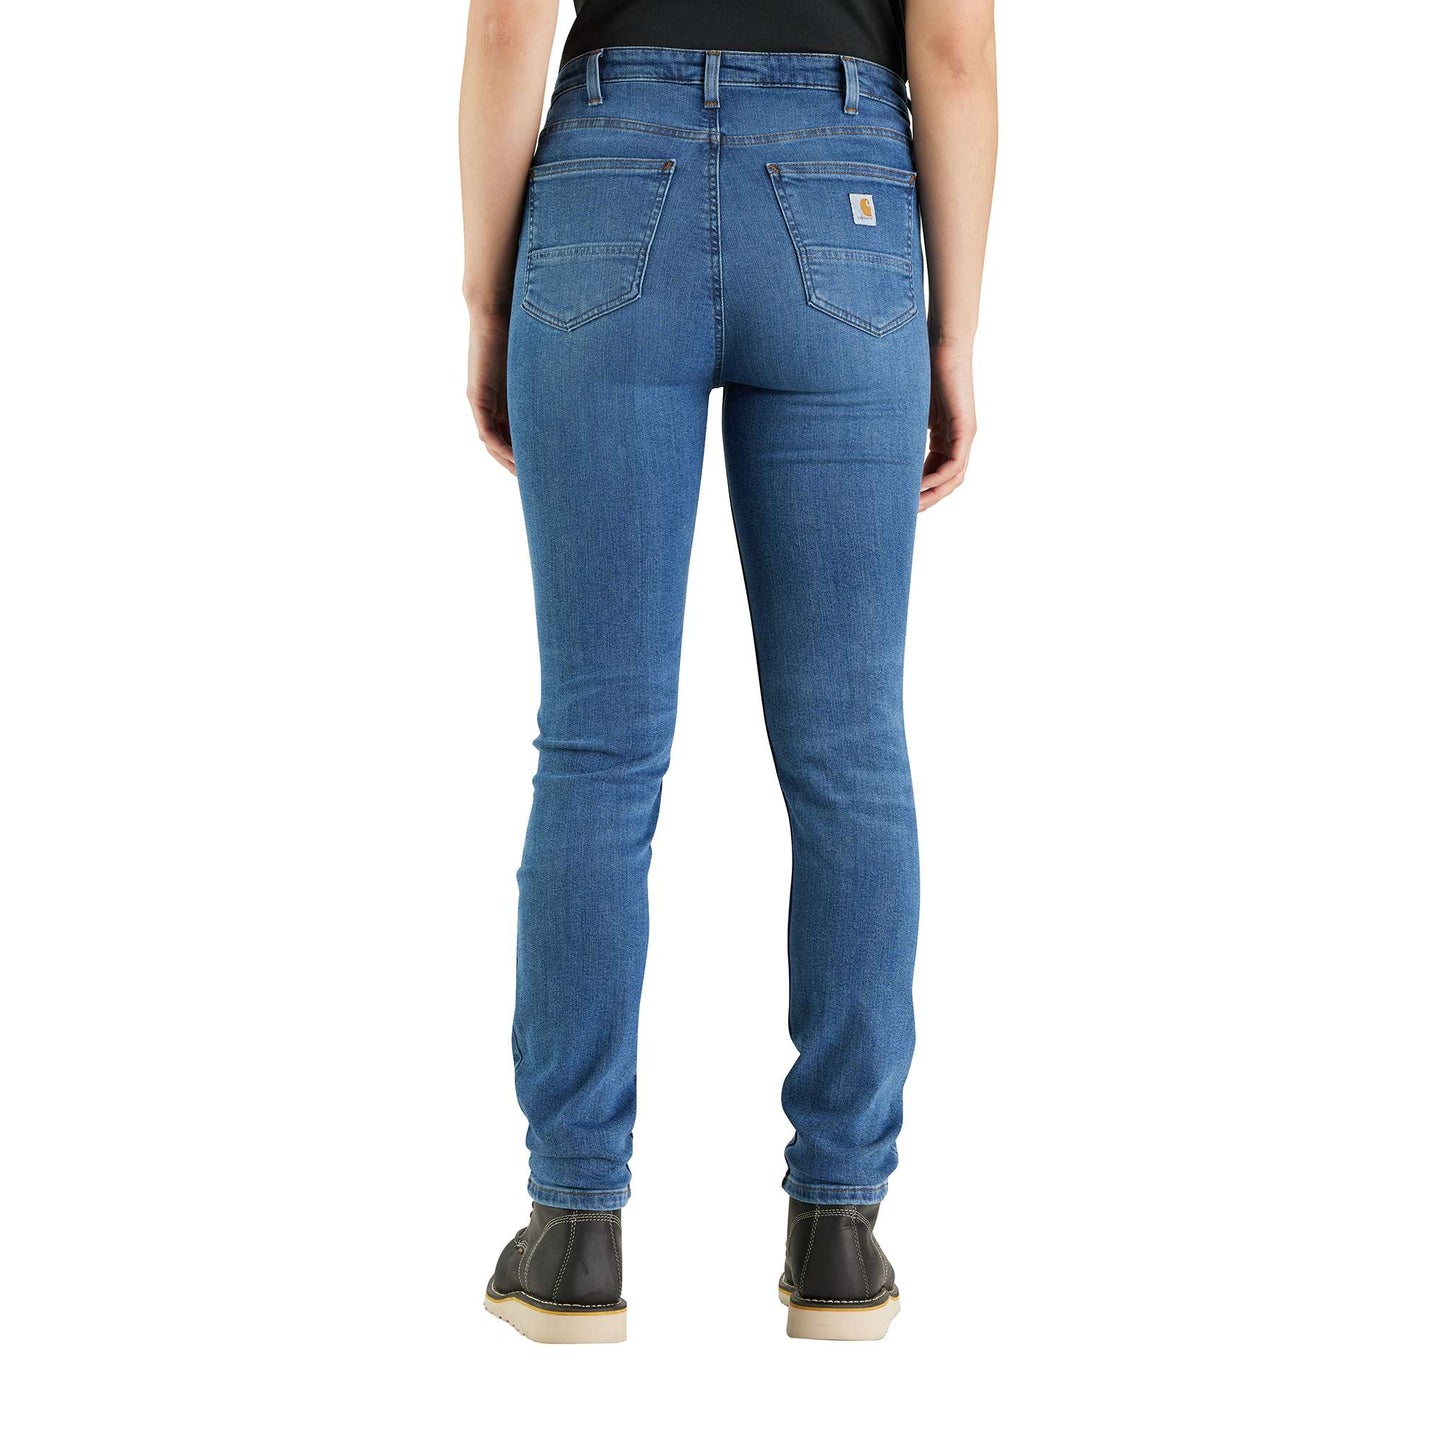 CARHARTT Womens Regular Slim Fit Skinny Jeans US 14 XL W36 L30